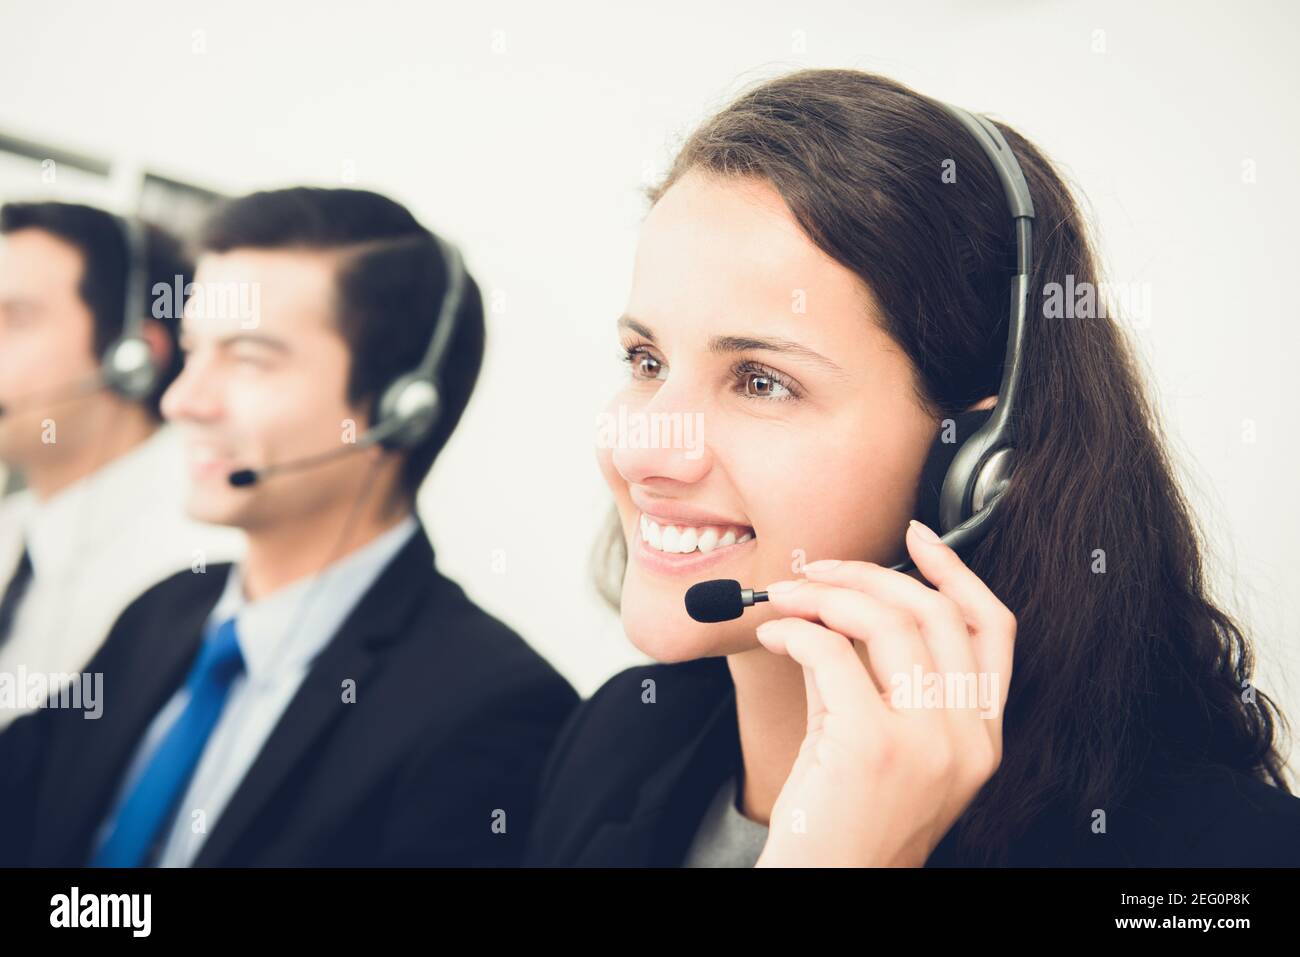 Bella donna sorridente che lavora nel call center come operatore o telemarketer Foto Stock